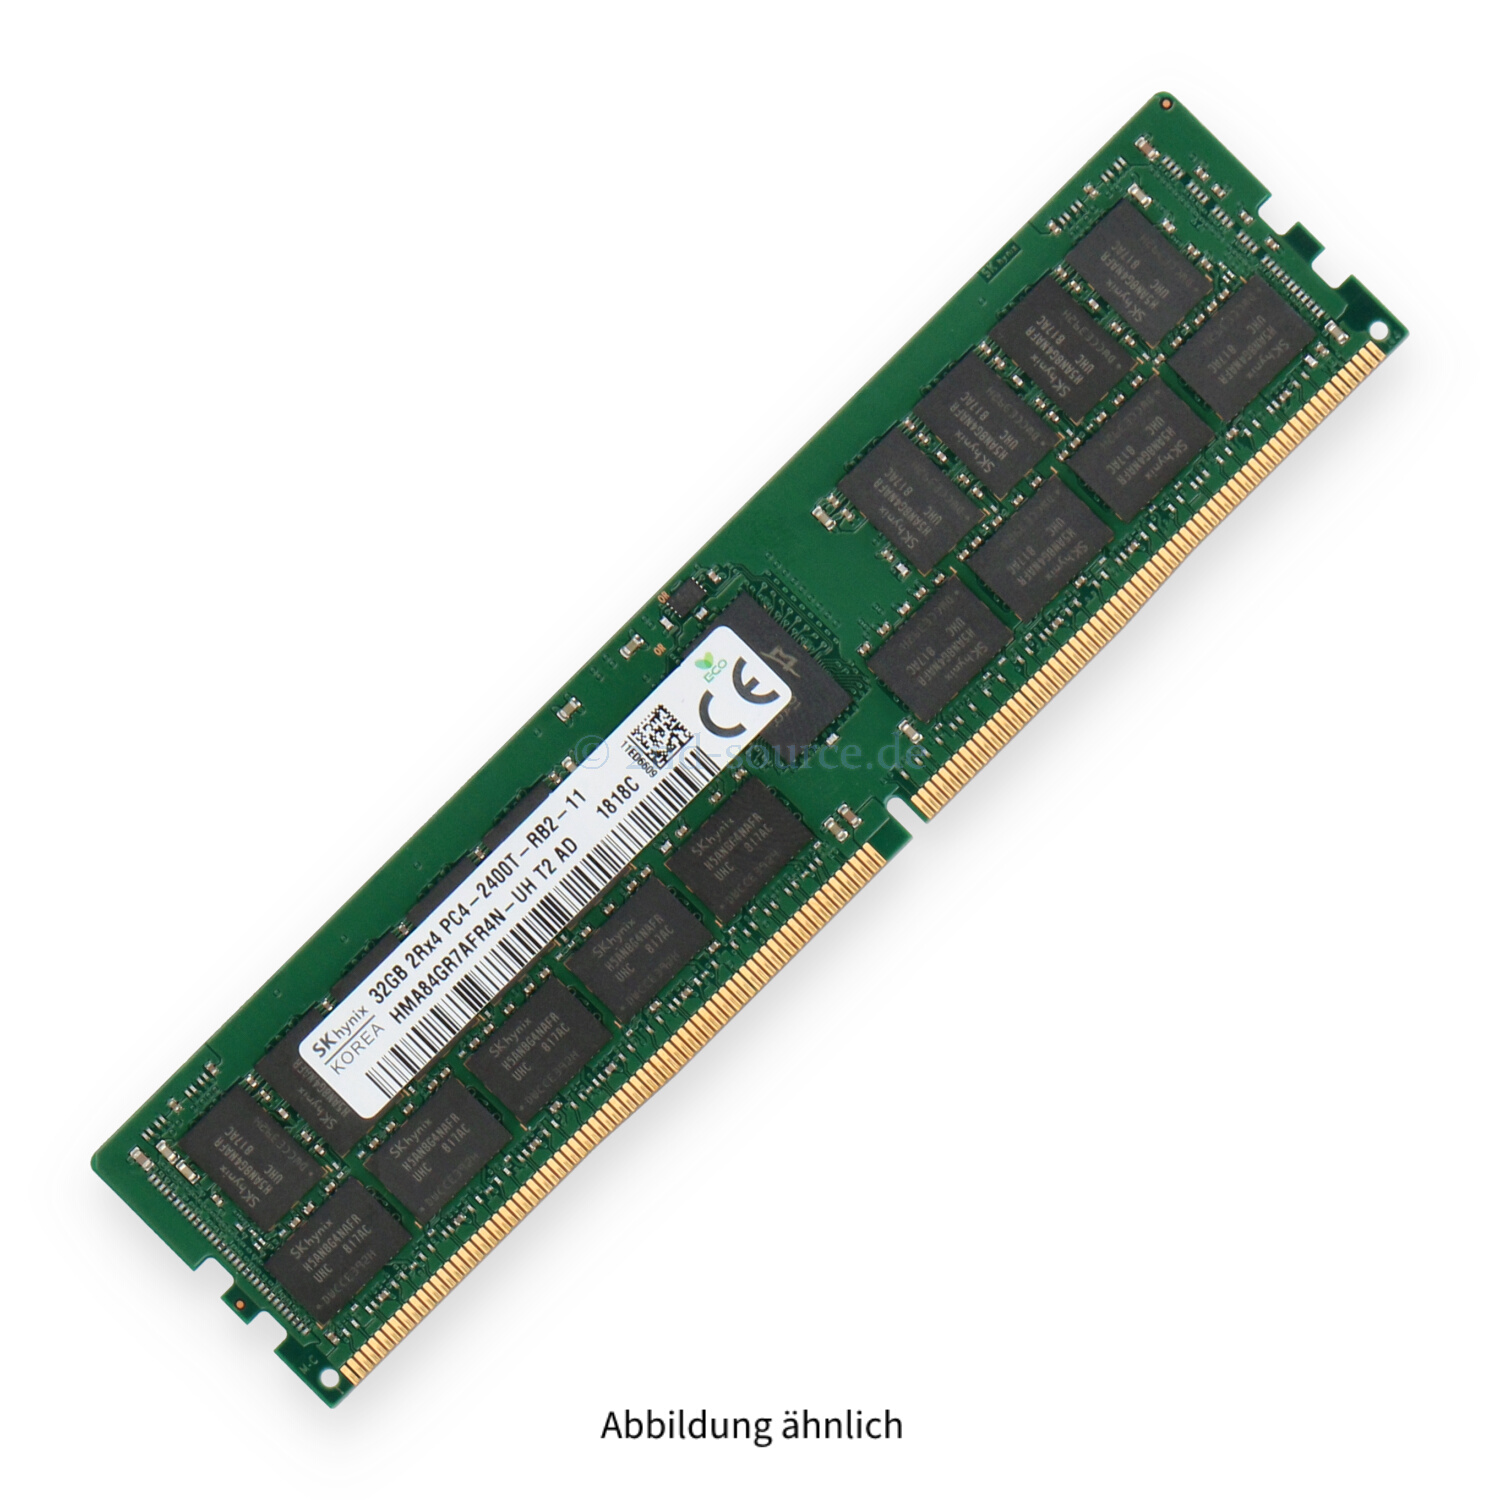 Hynix 32GB PC4-19200T-R DIMM Dual Rank x4 (DDR4-2400) Registered ECC HMA84GR7AFR4N-UH